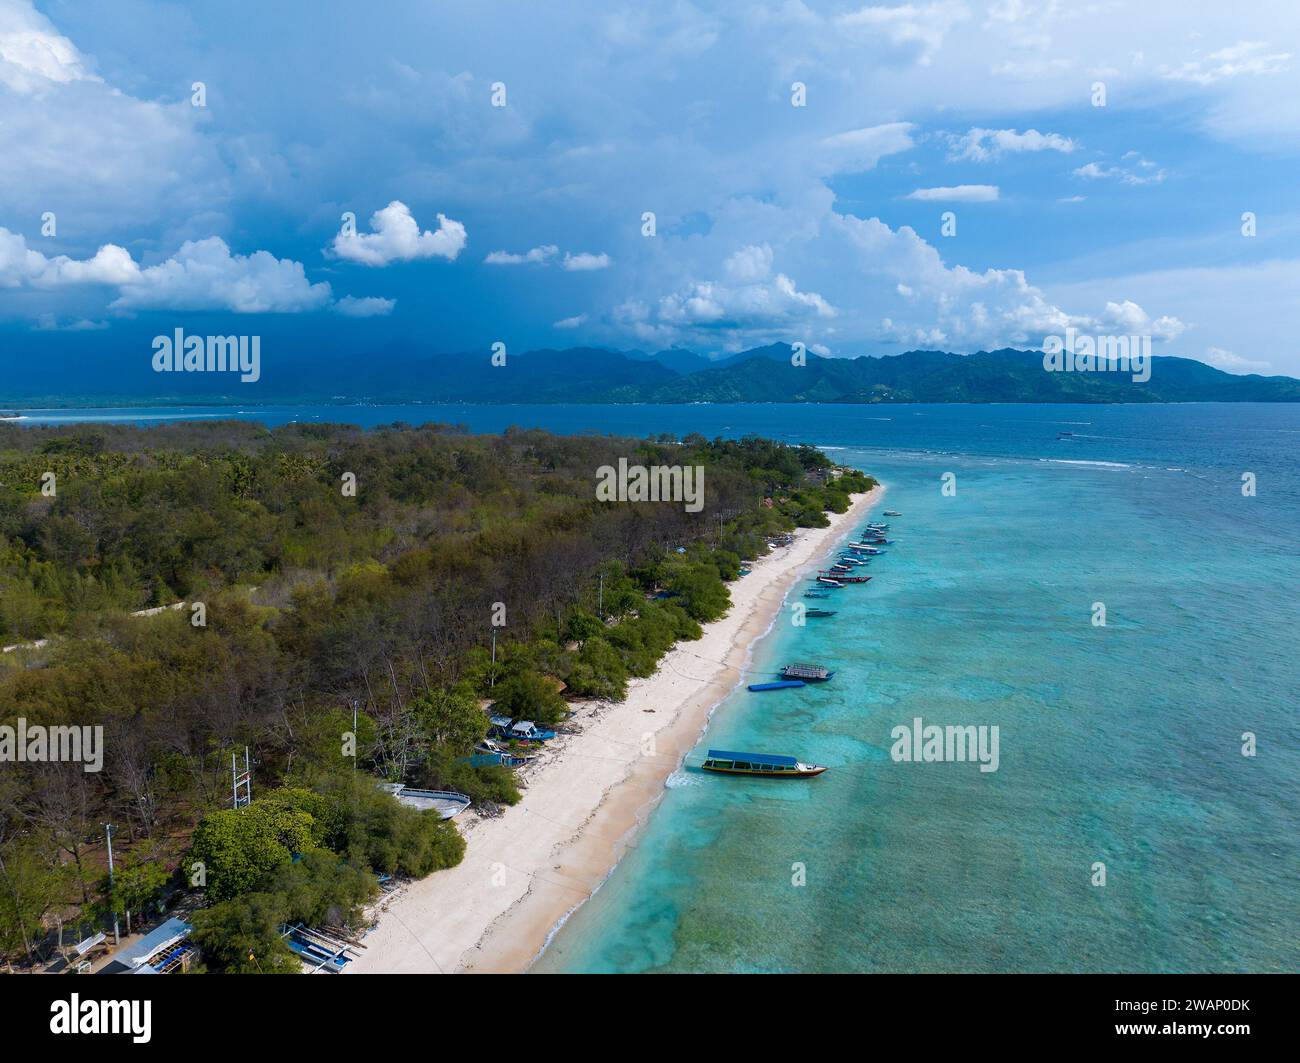 Vista aerea della spiaggia sull'isola di Gili meno, Indonesia Foto Stock